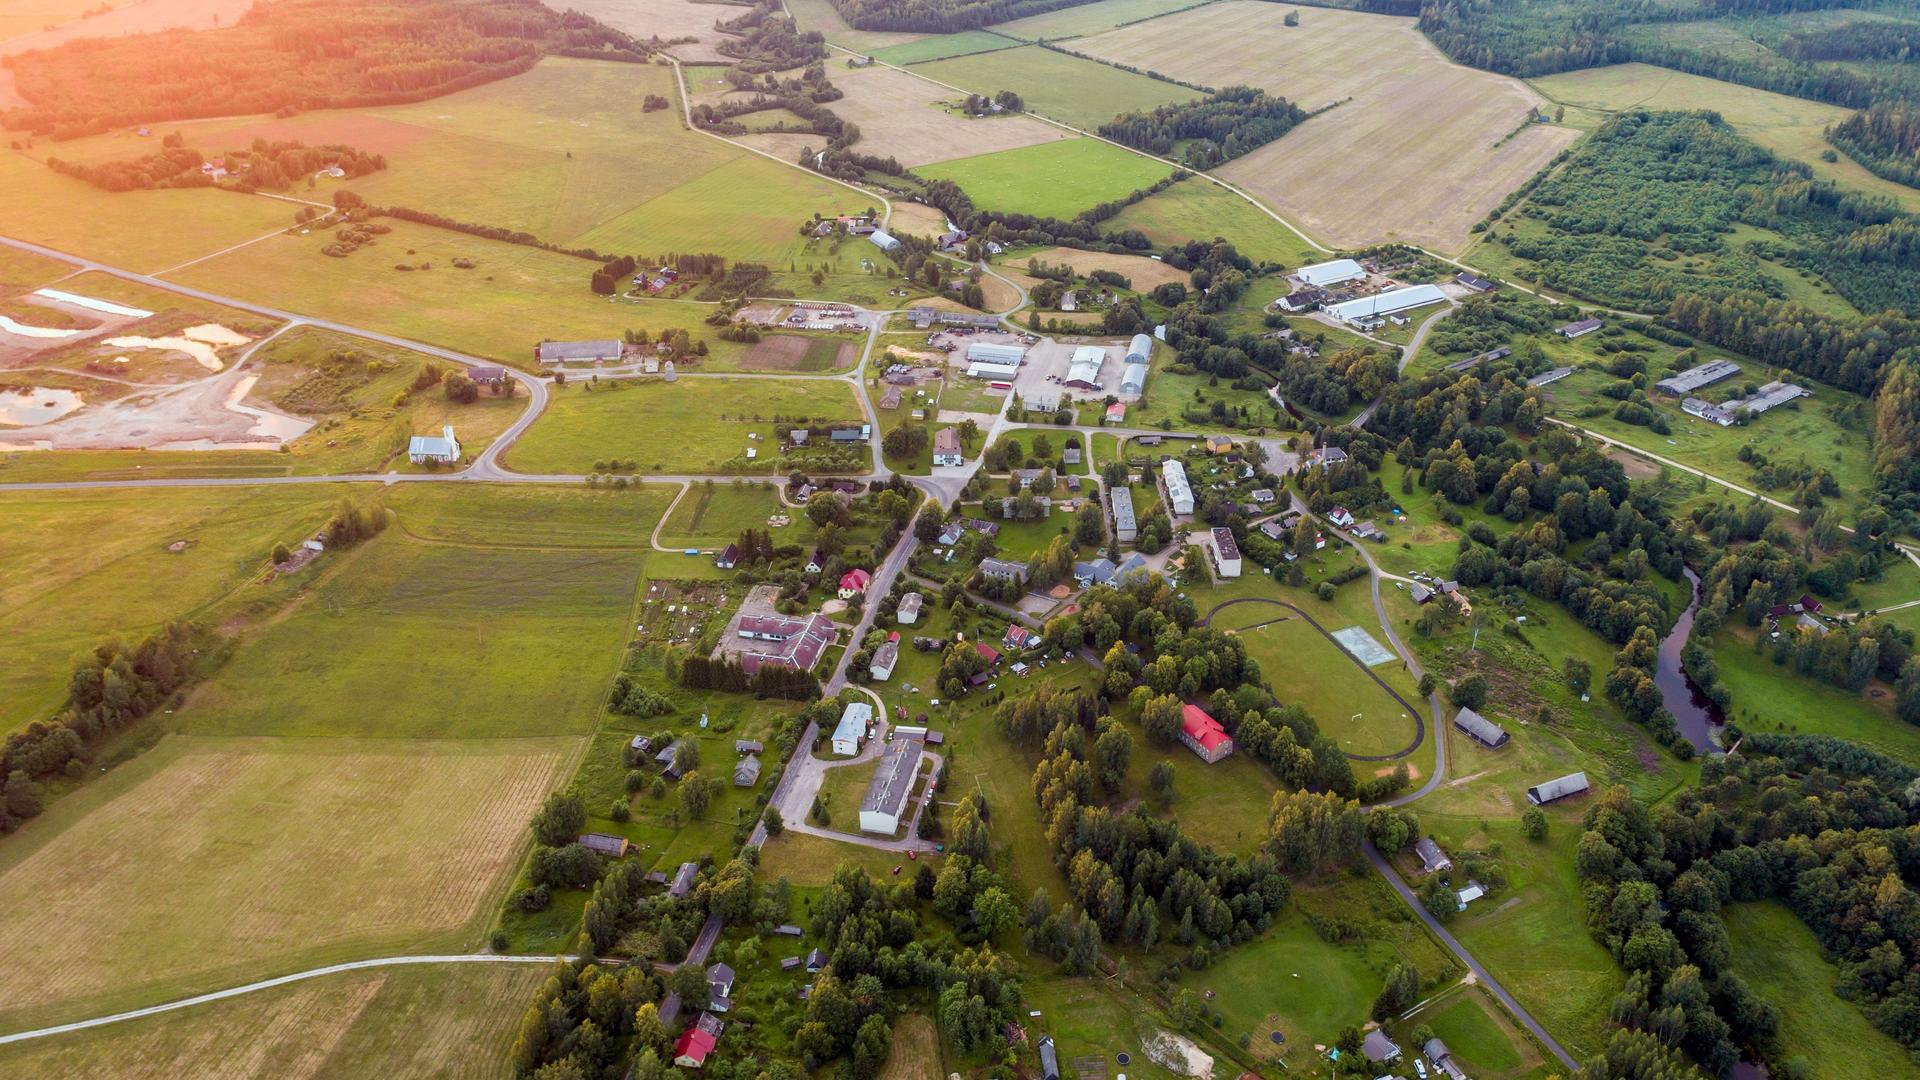 Luftaufnahme einer kleinen Ortschaft umgeben von Feldern und Wald.